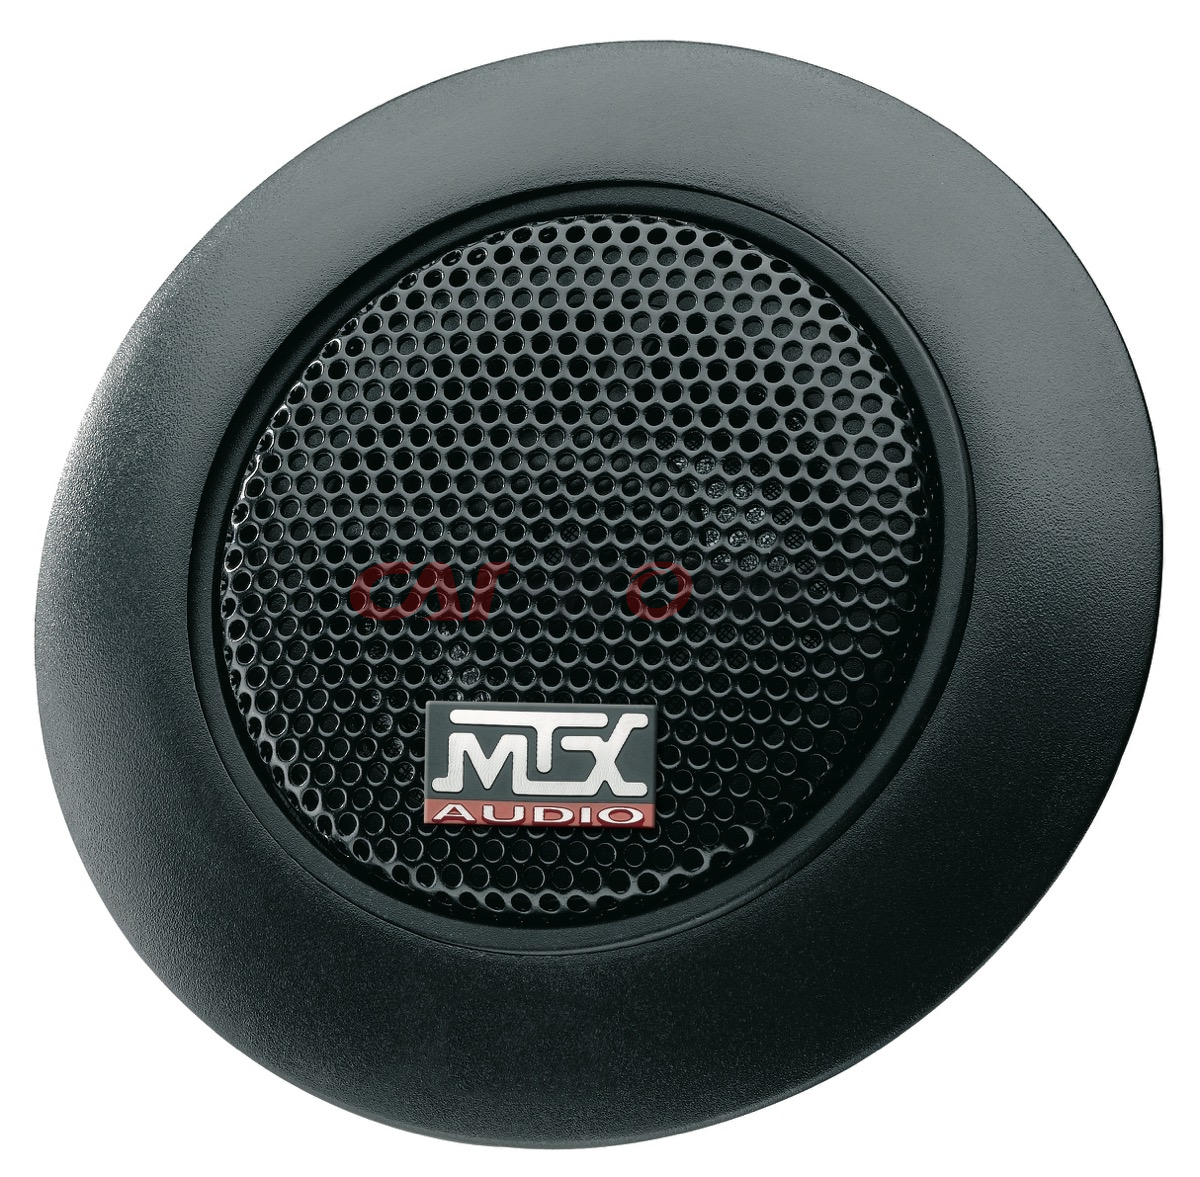 Głośniki samochodowe 2 - drożne komponentowe MTX AUDIO TR50S, 4 Ohm, 55W RMS, 130 mm